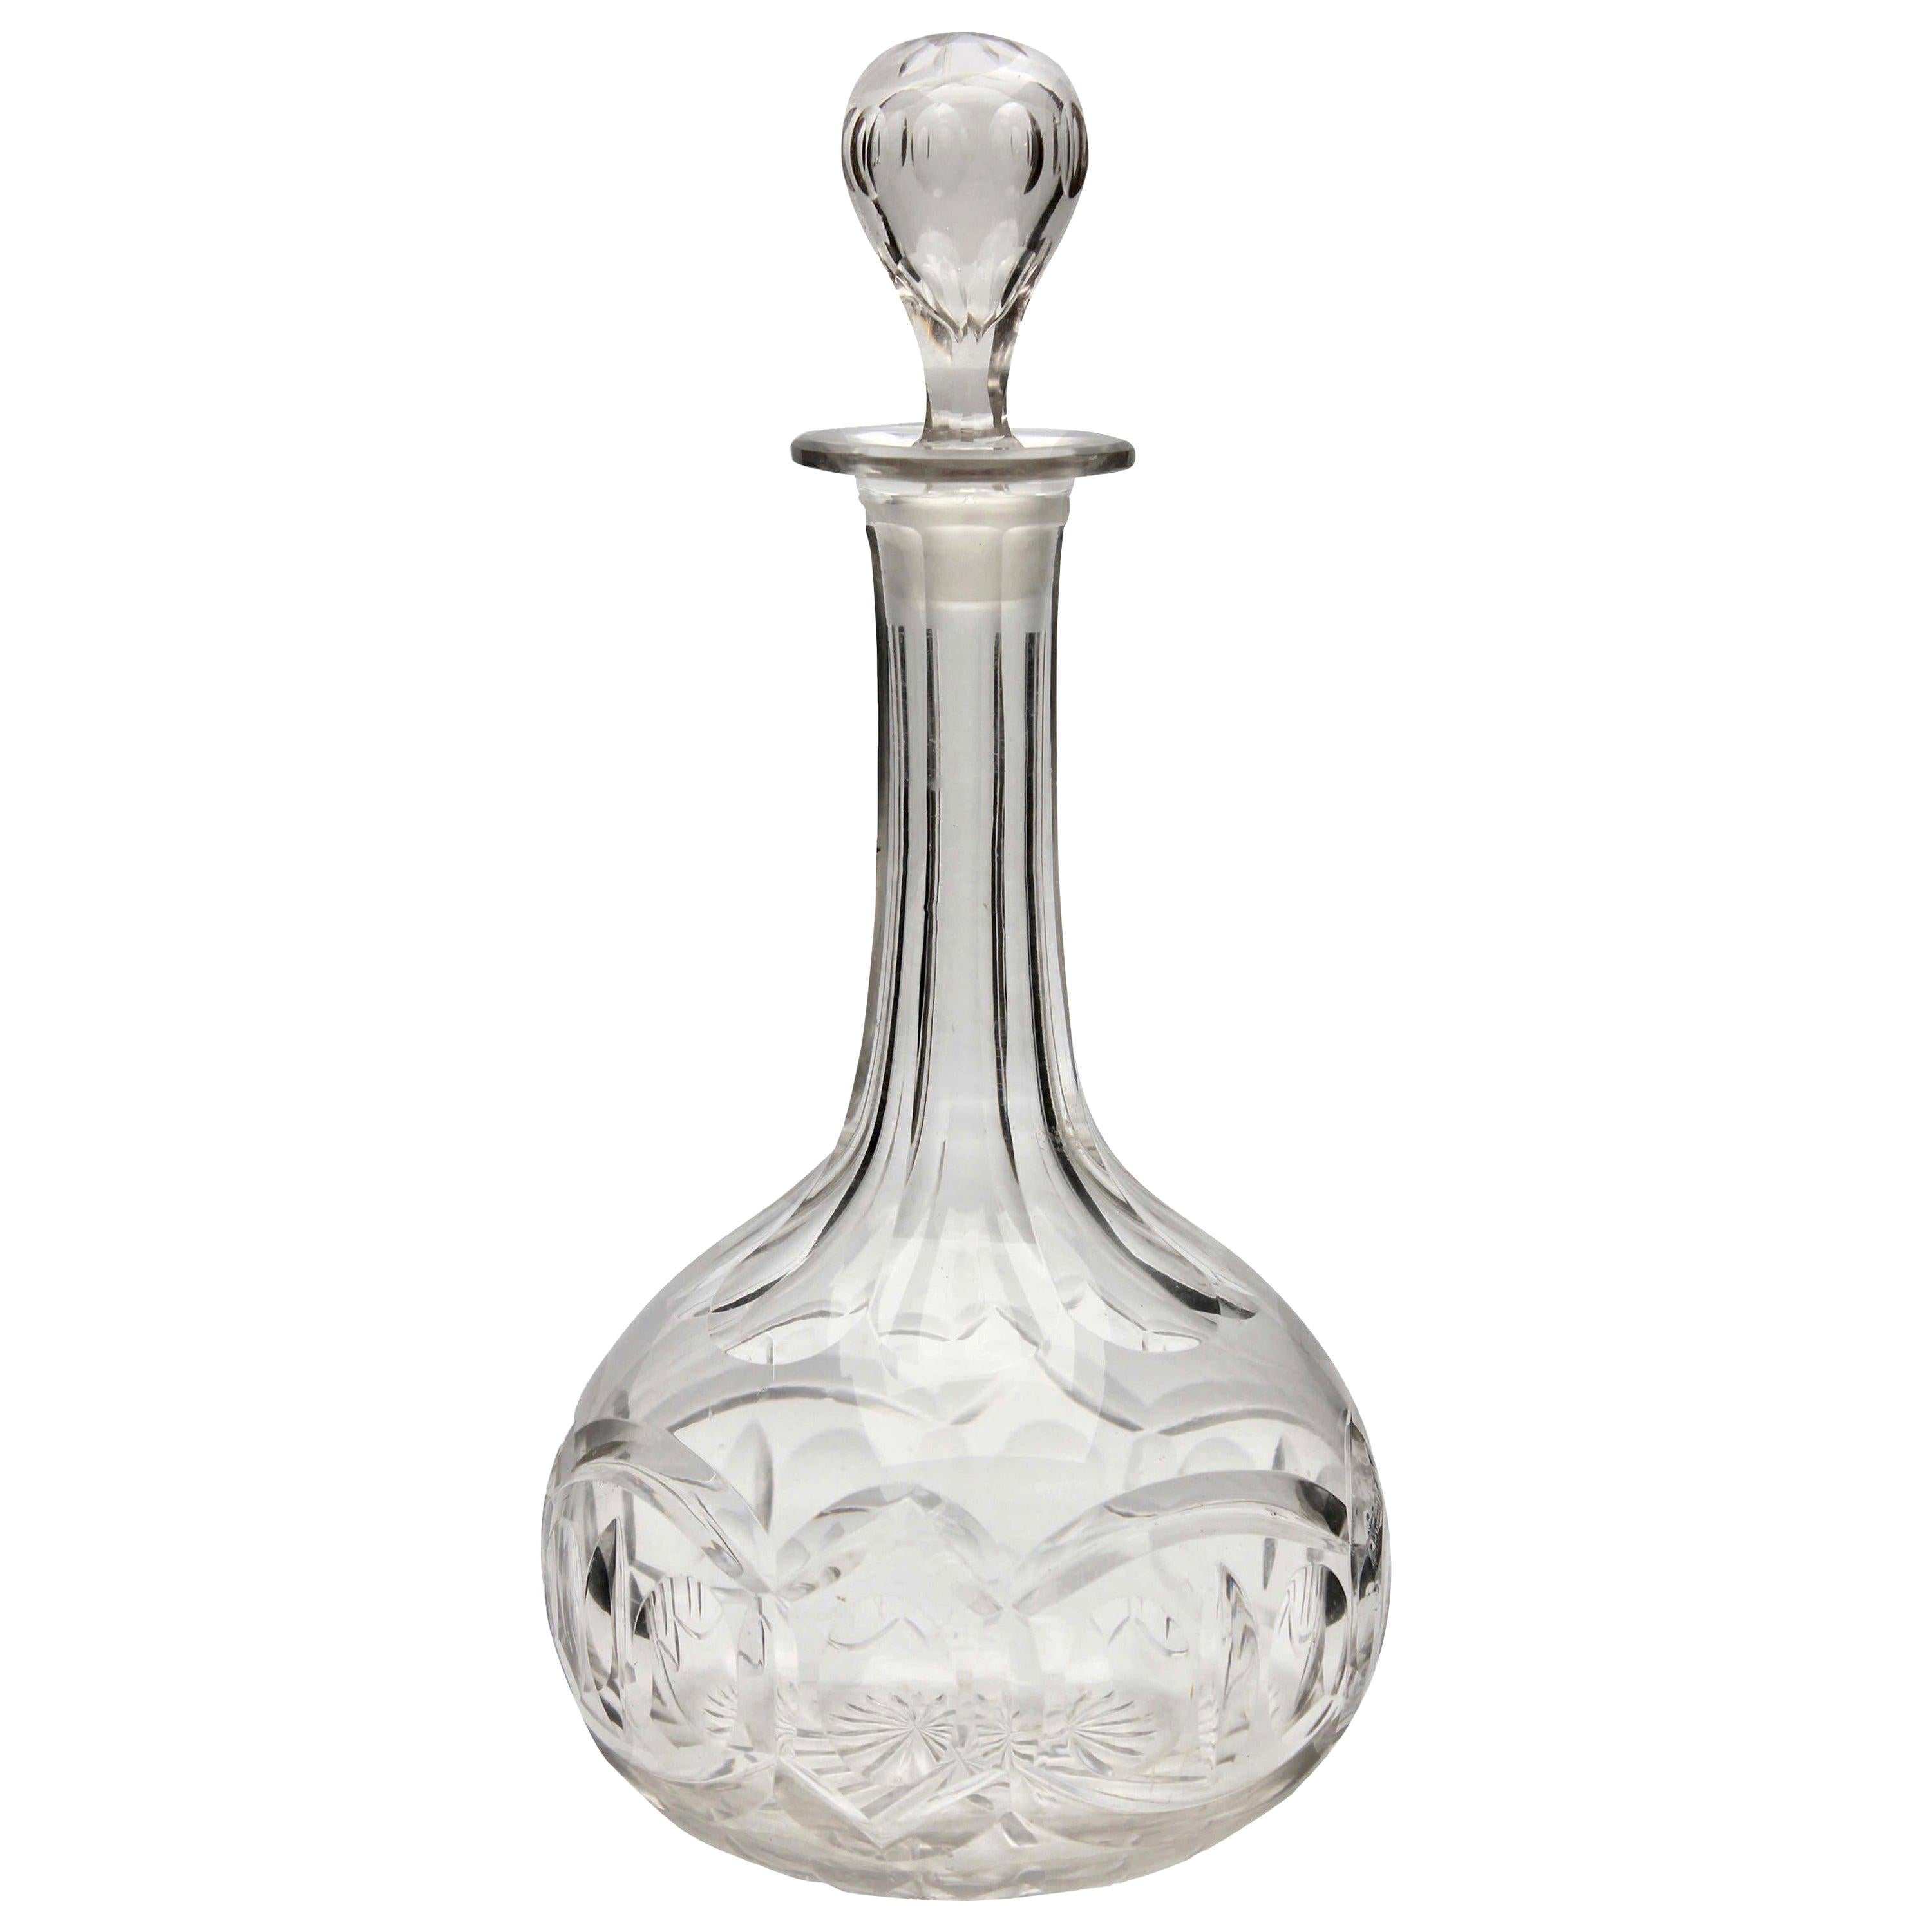 Carafe en cristal taillé du Val Saint Lambert 20ème siècle, fondée en 1826, Belgique